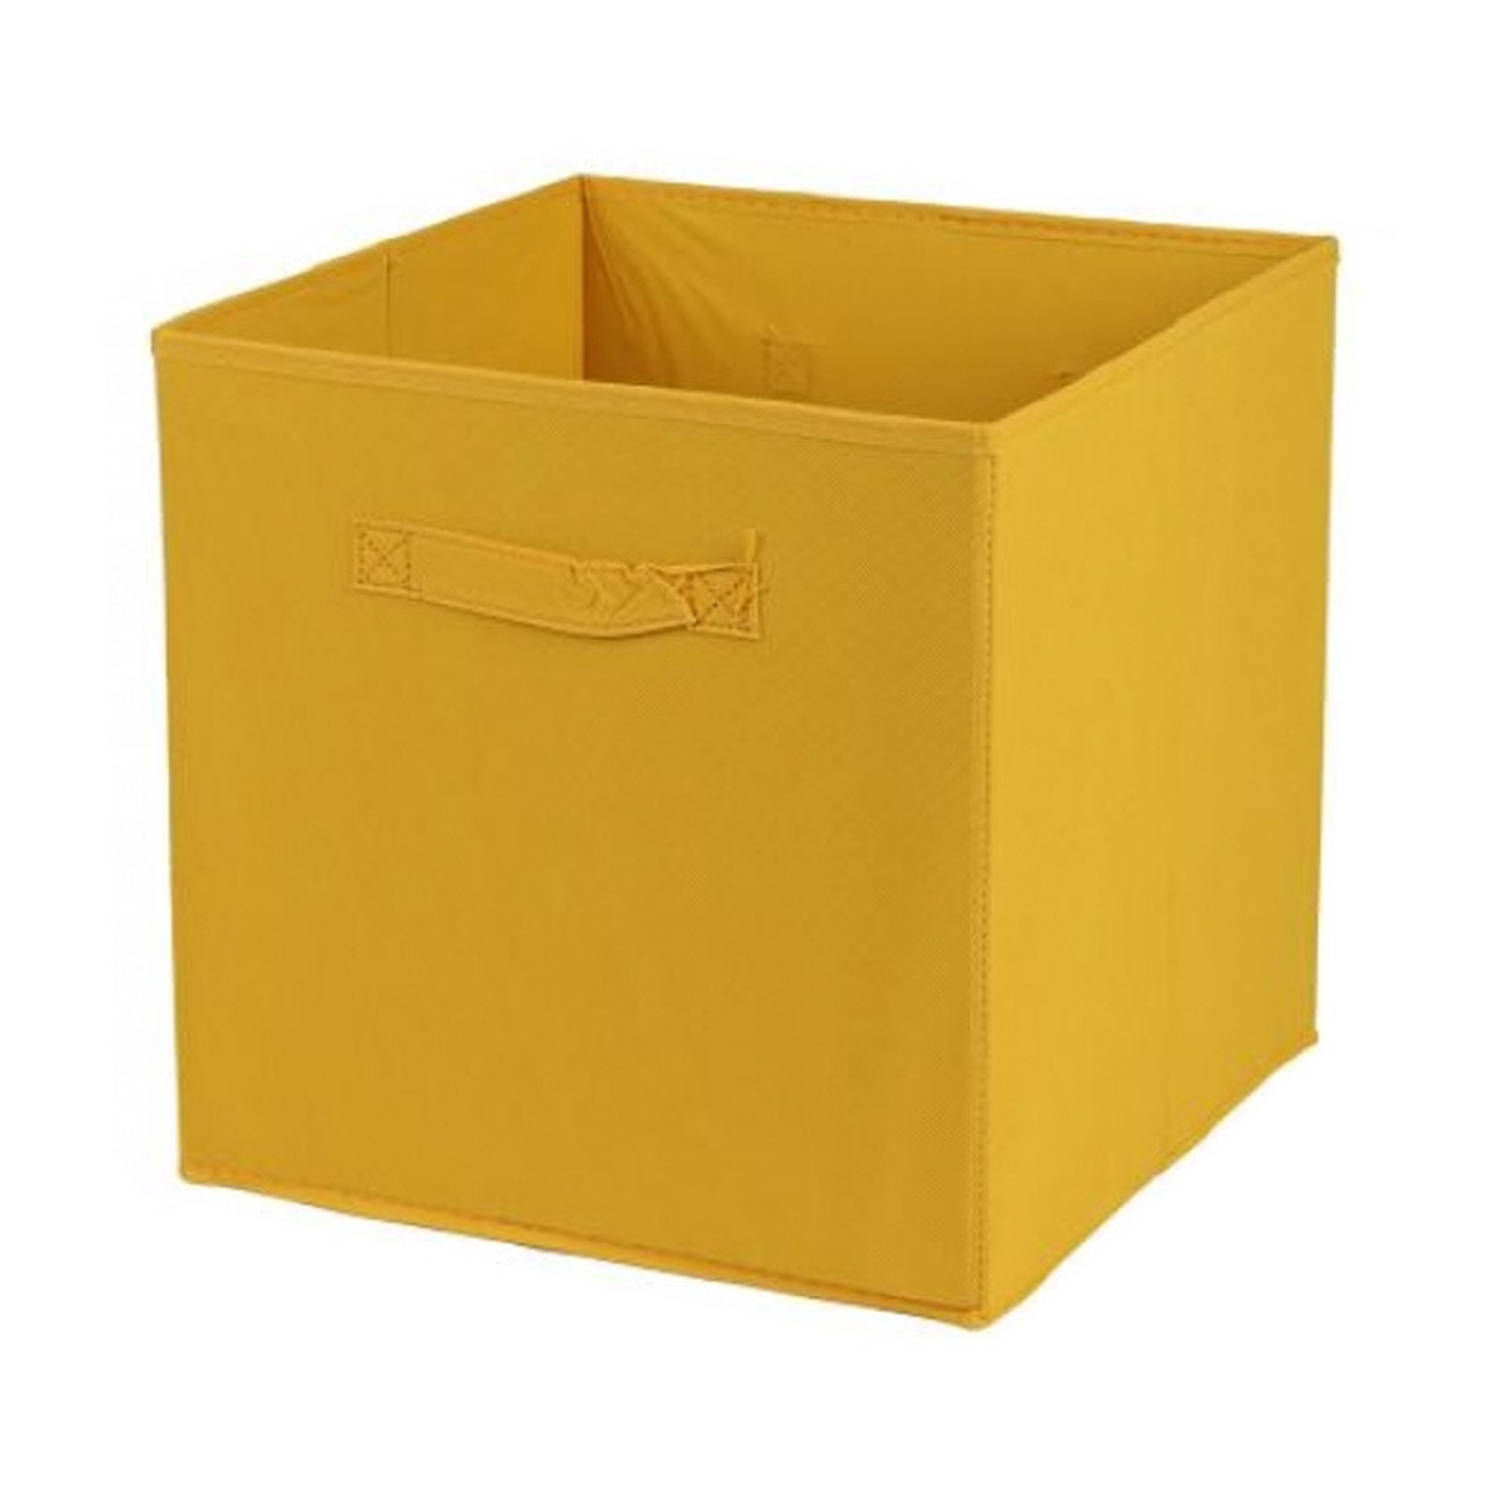 Urban Living Opbergmand/kastmand Square Box - karton/kunststof - 29 liter - oker geel - 31 x 31 x 31 cm - Vakkenkast manden